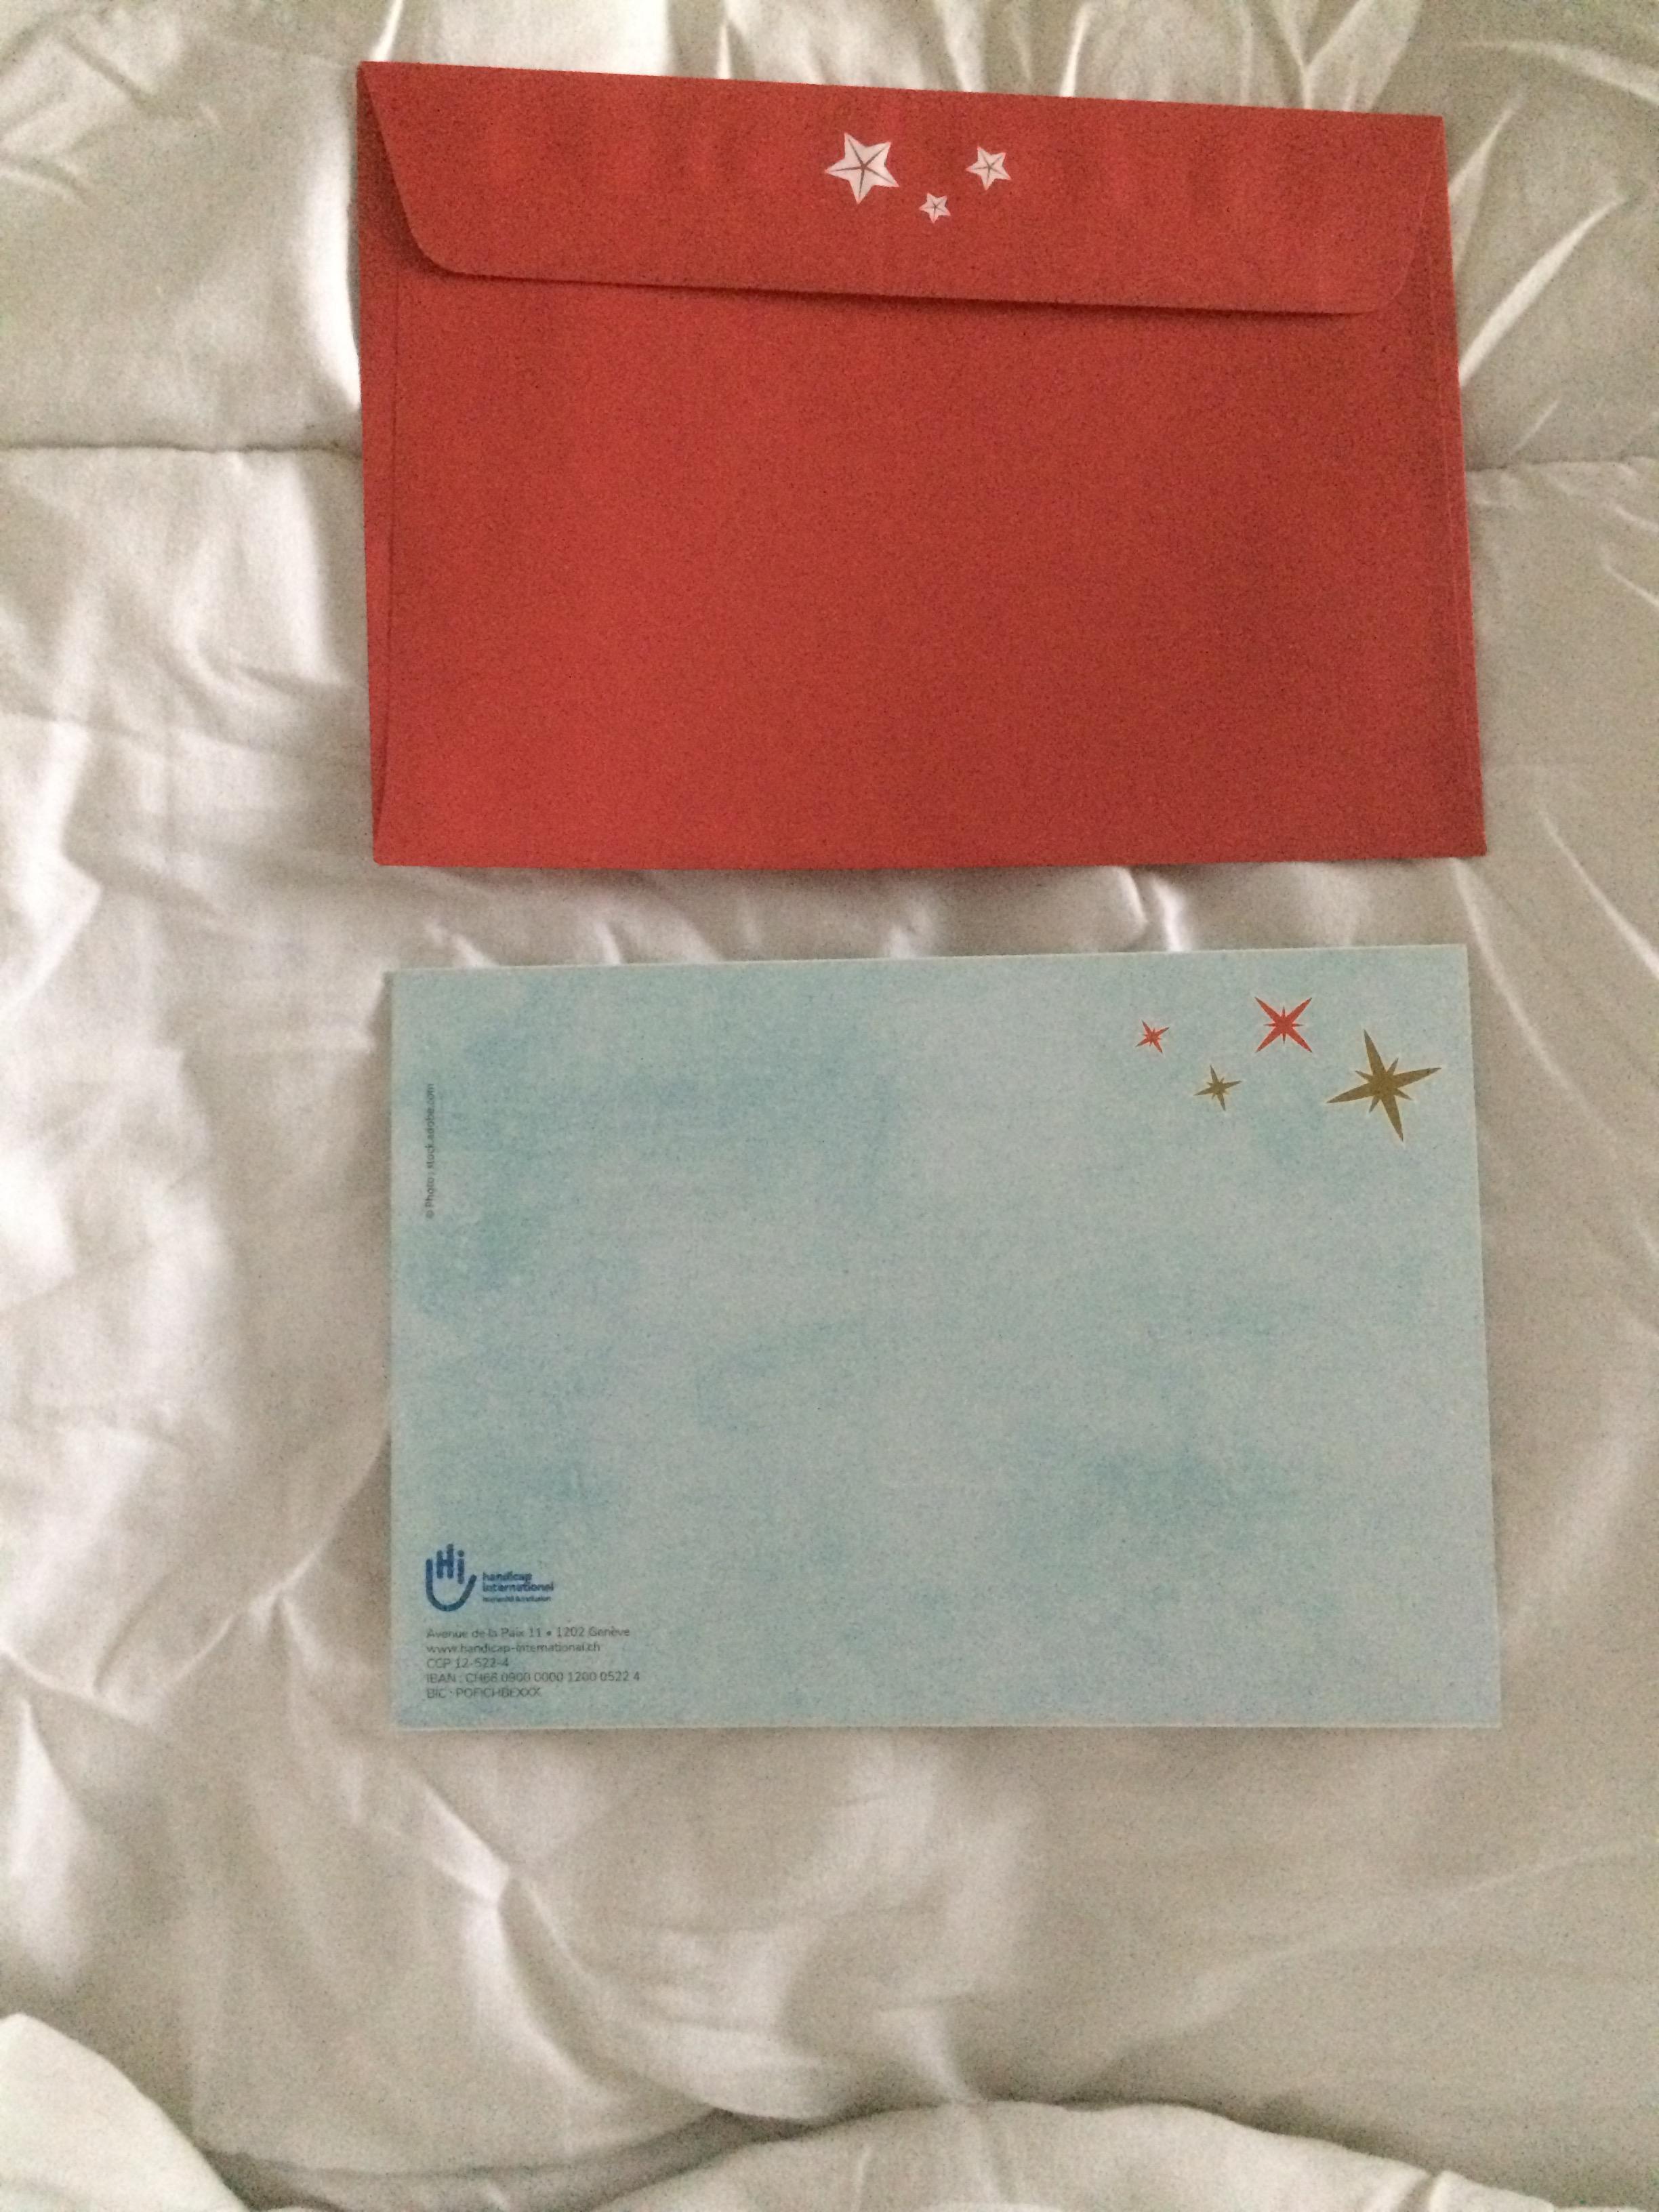 troc de troc carte de voeux "joyeuses fêtes" et son enveloppe colorée rouge image 2